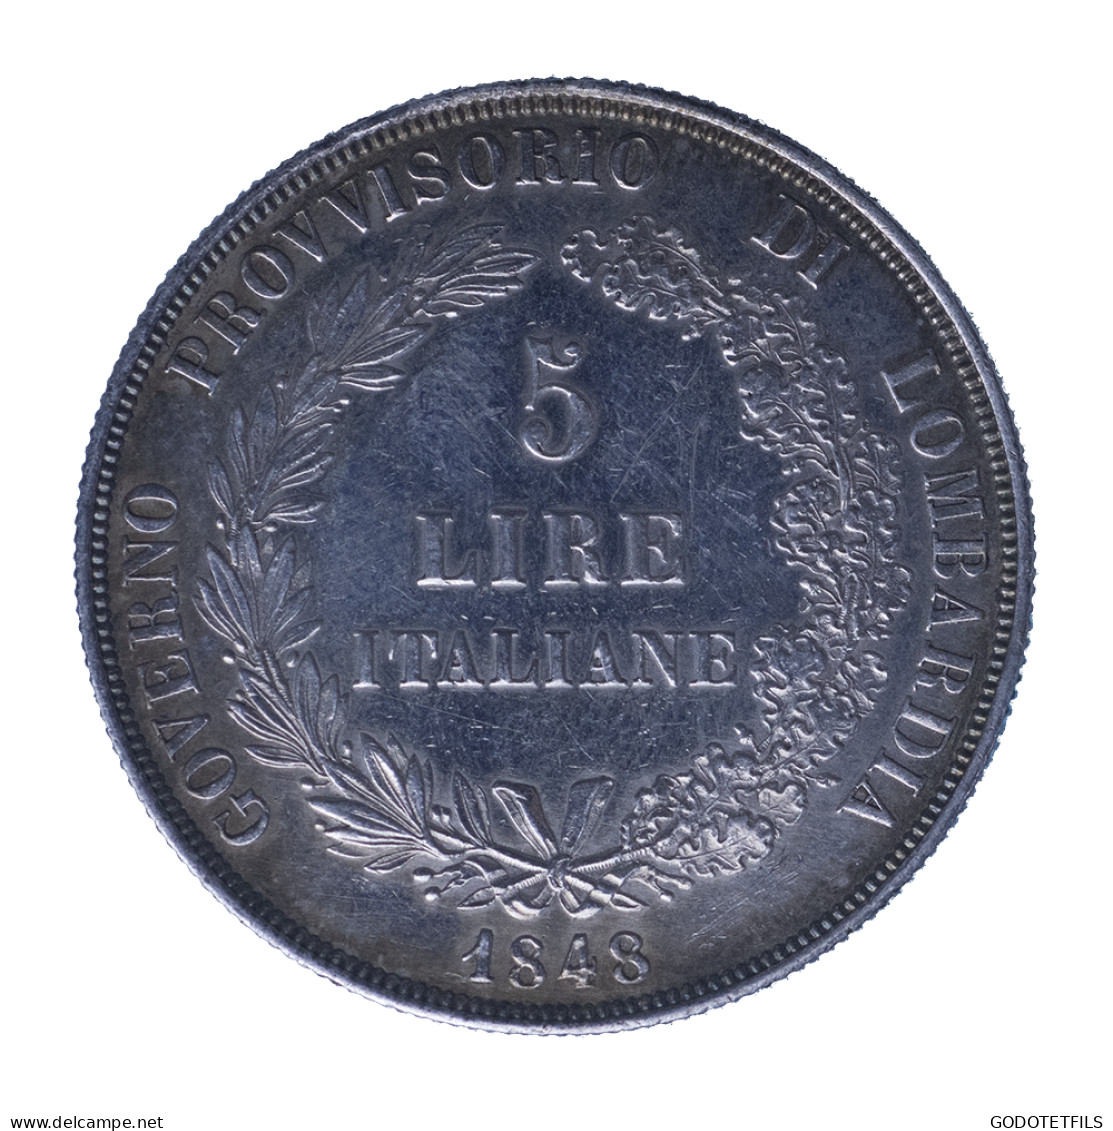 Gouvernement Provisoire De Lombardie - 5 Lire - 1848 - Milan - Lombardien-Venezia